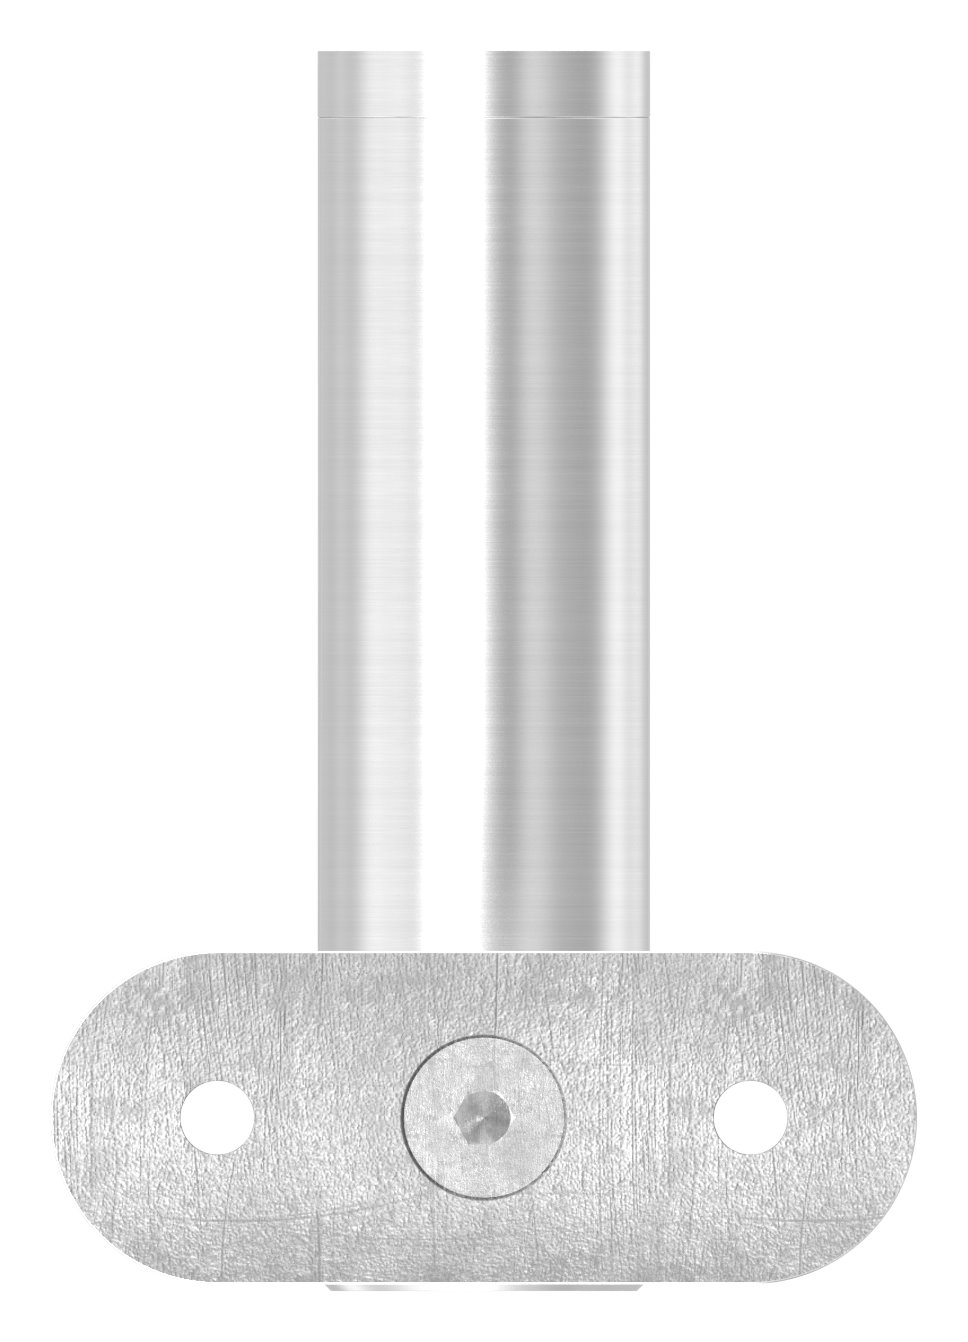 Handlaufhalter mit Handlaufanschlussplatte 42,4mm, V2A